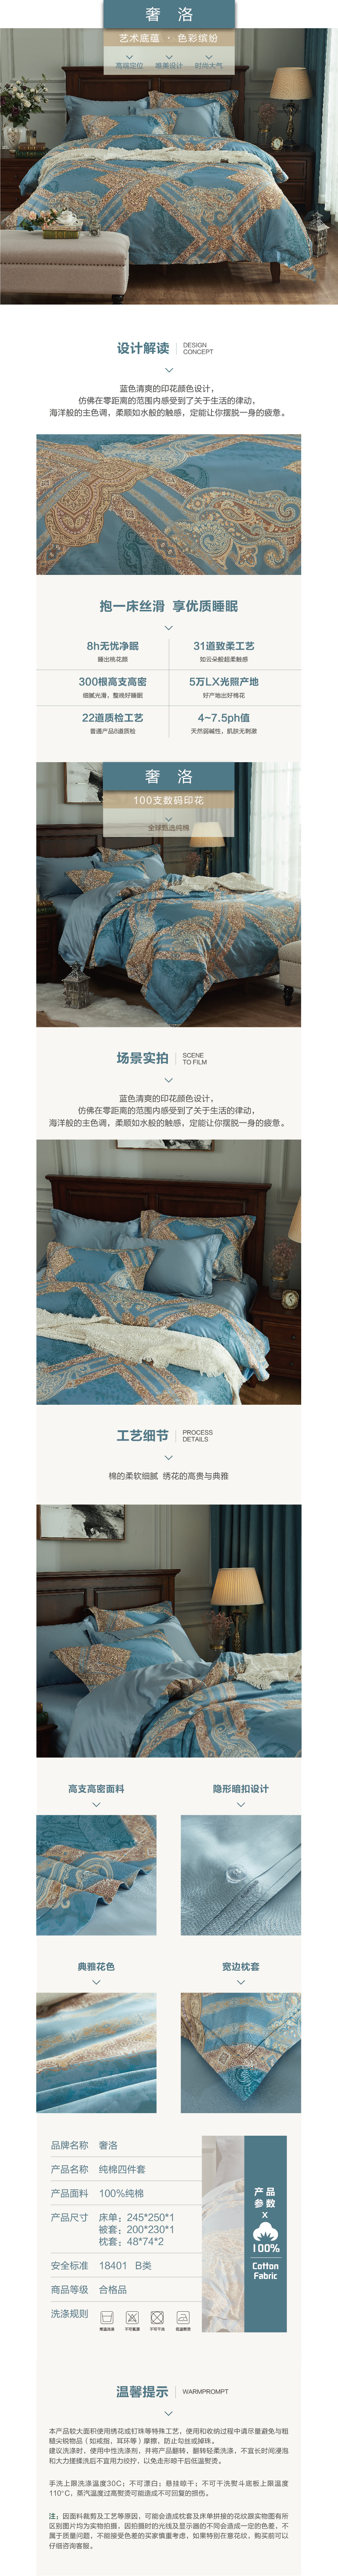 床上用品 纯棉四件套 蕾丝工艺 数码印花系列 奢洛